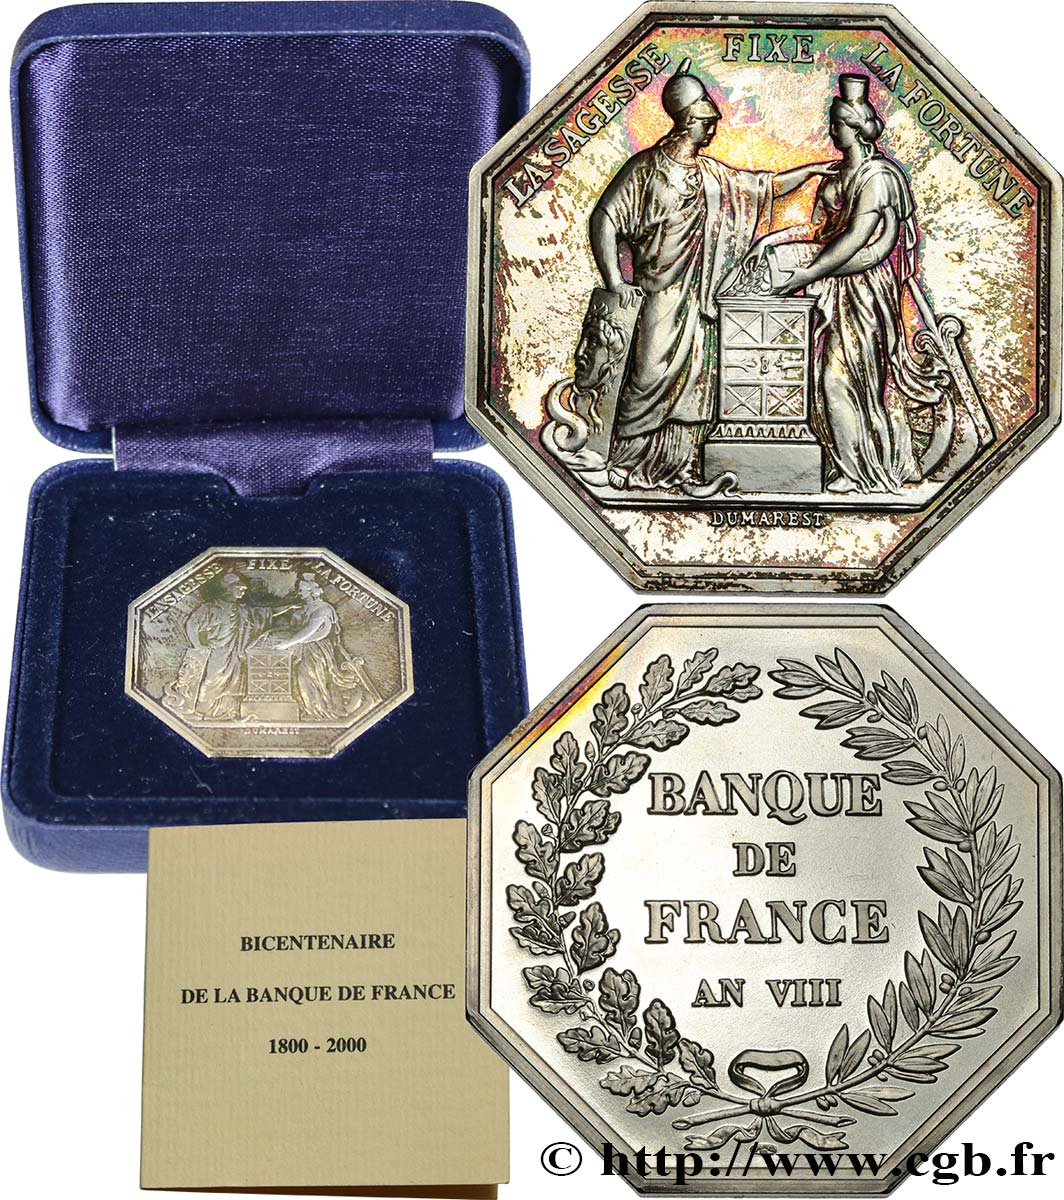 BANQUE DE FRANCE BANQUE DE FRANCE sans poinçon, refrappe du bicentenaire de la Banque de France MS